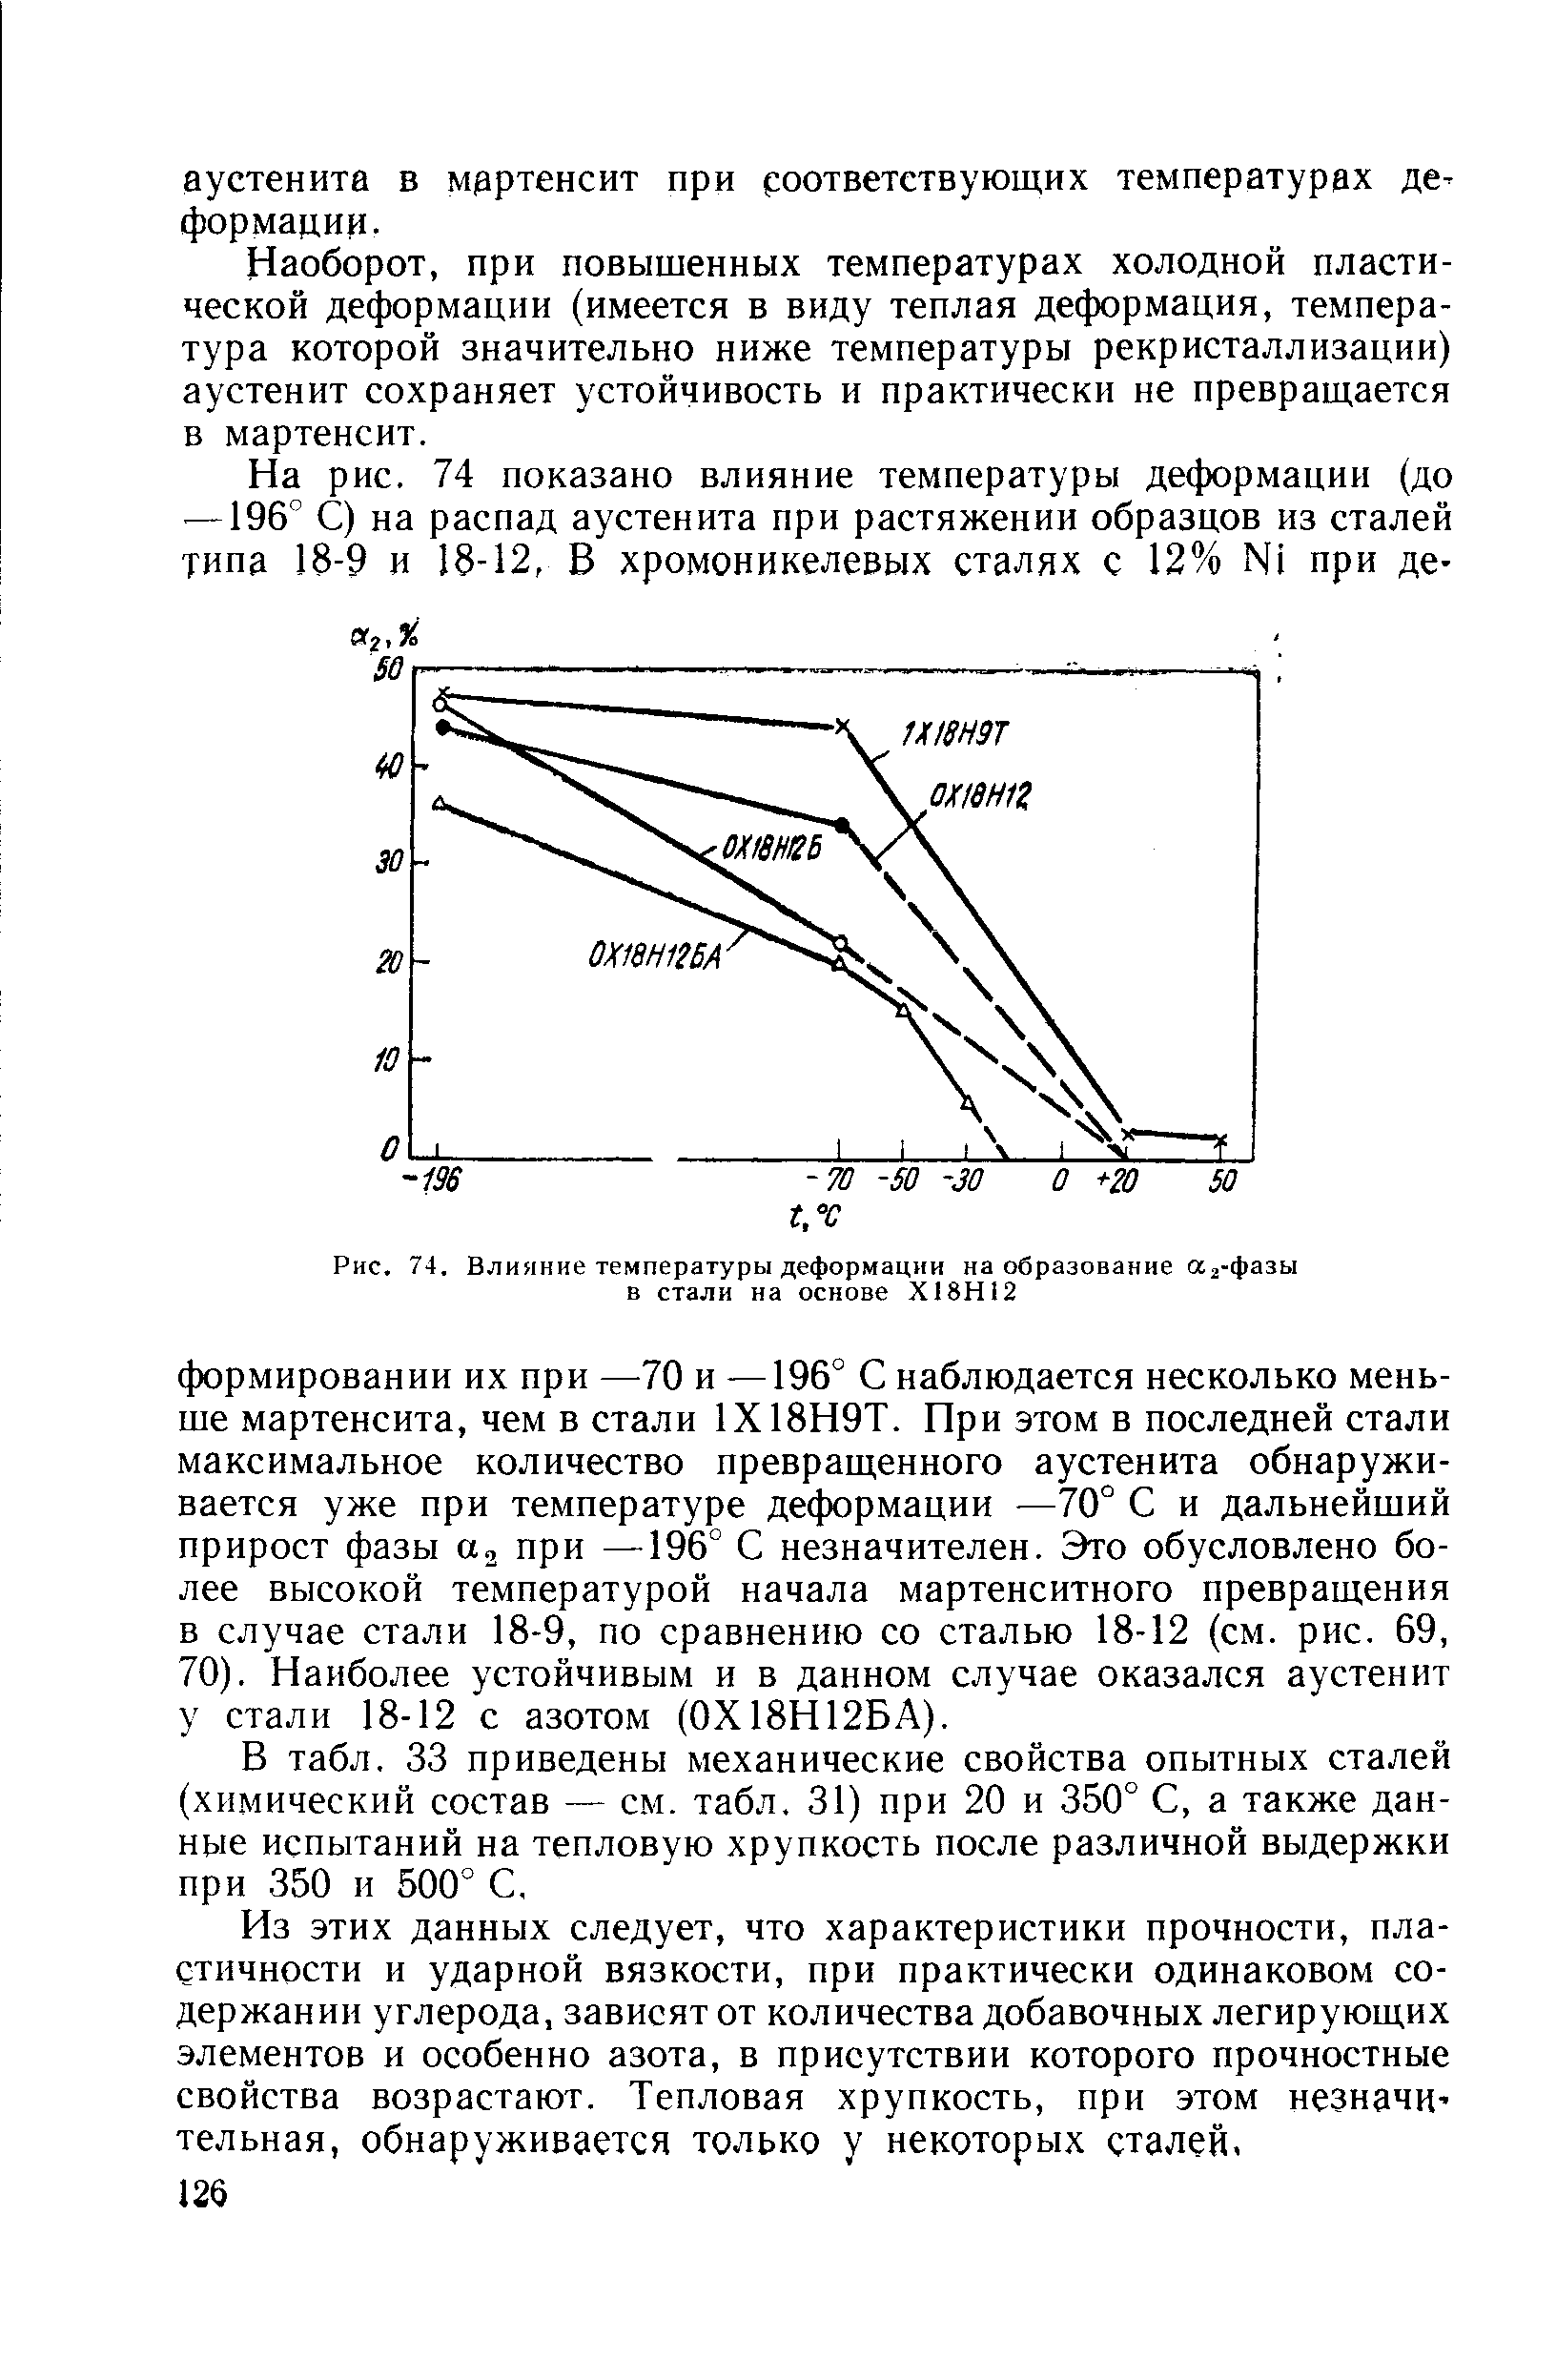 Рис. 74. Влияние температуры деформации на образование Лз-фазы в стали на основе Х18Н12
